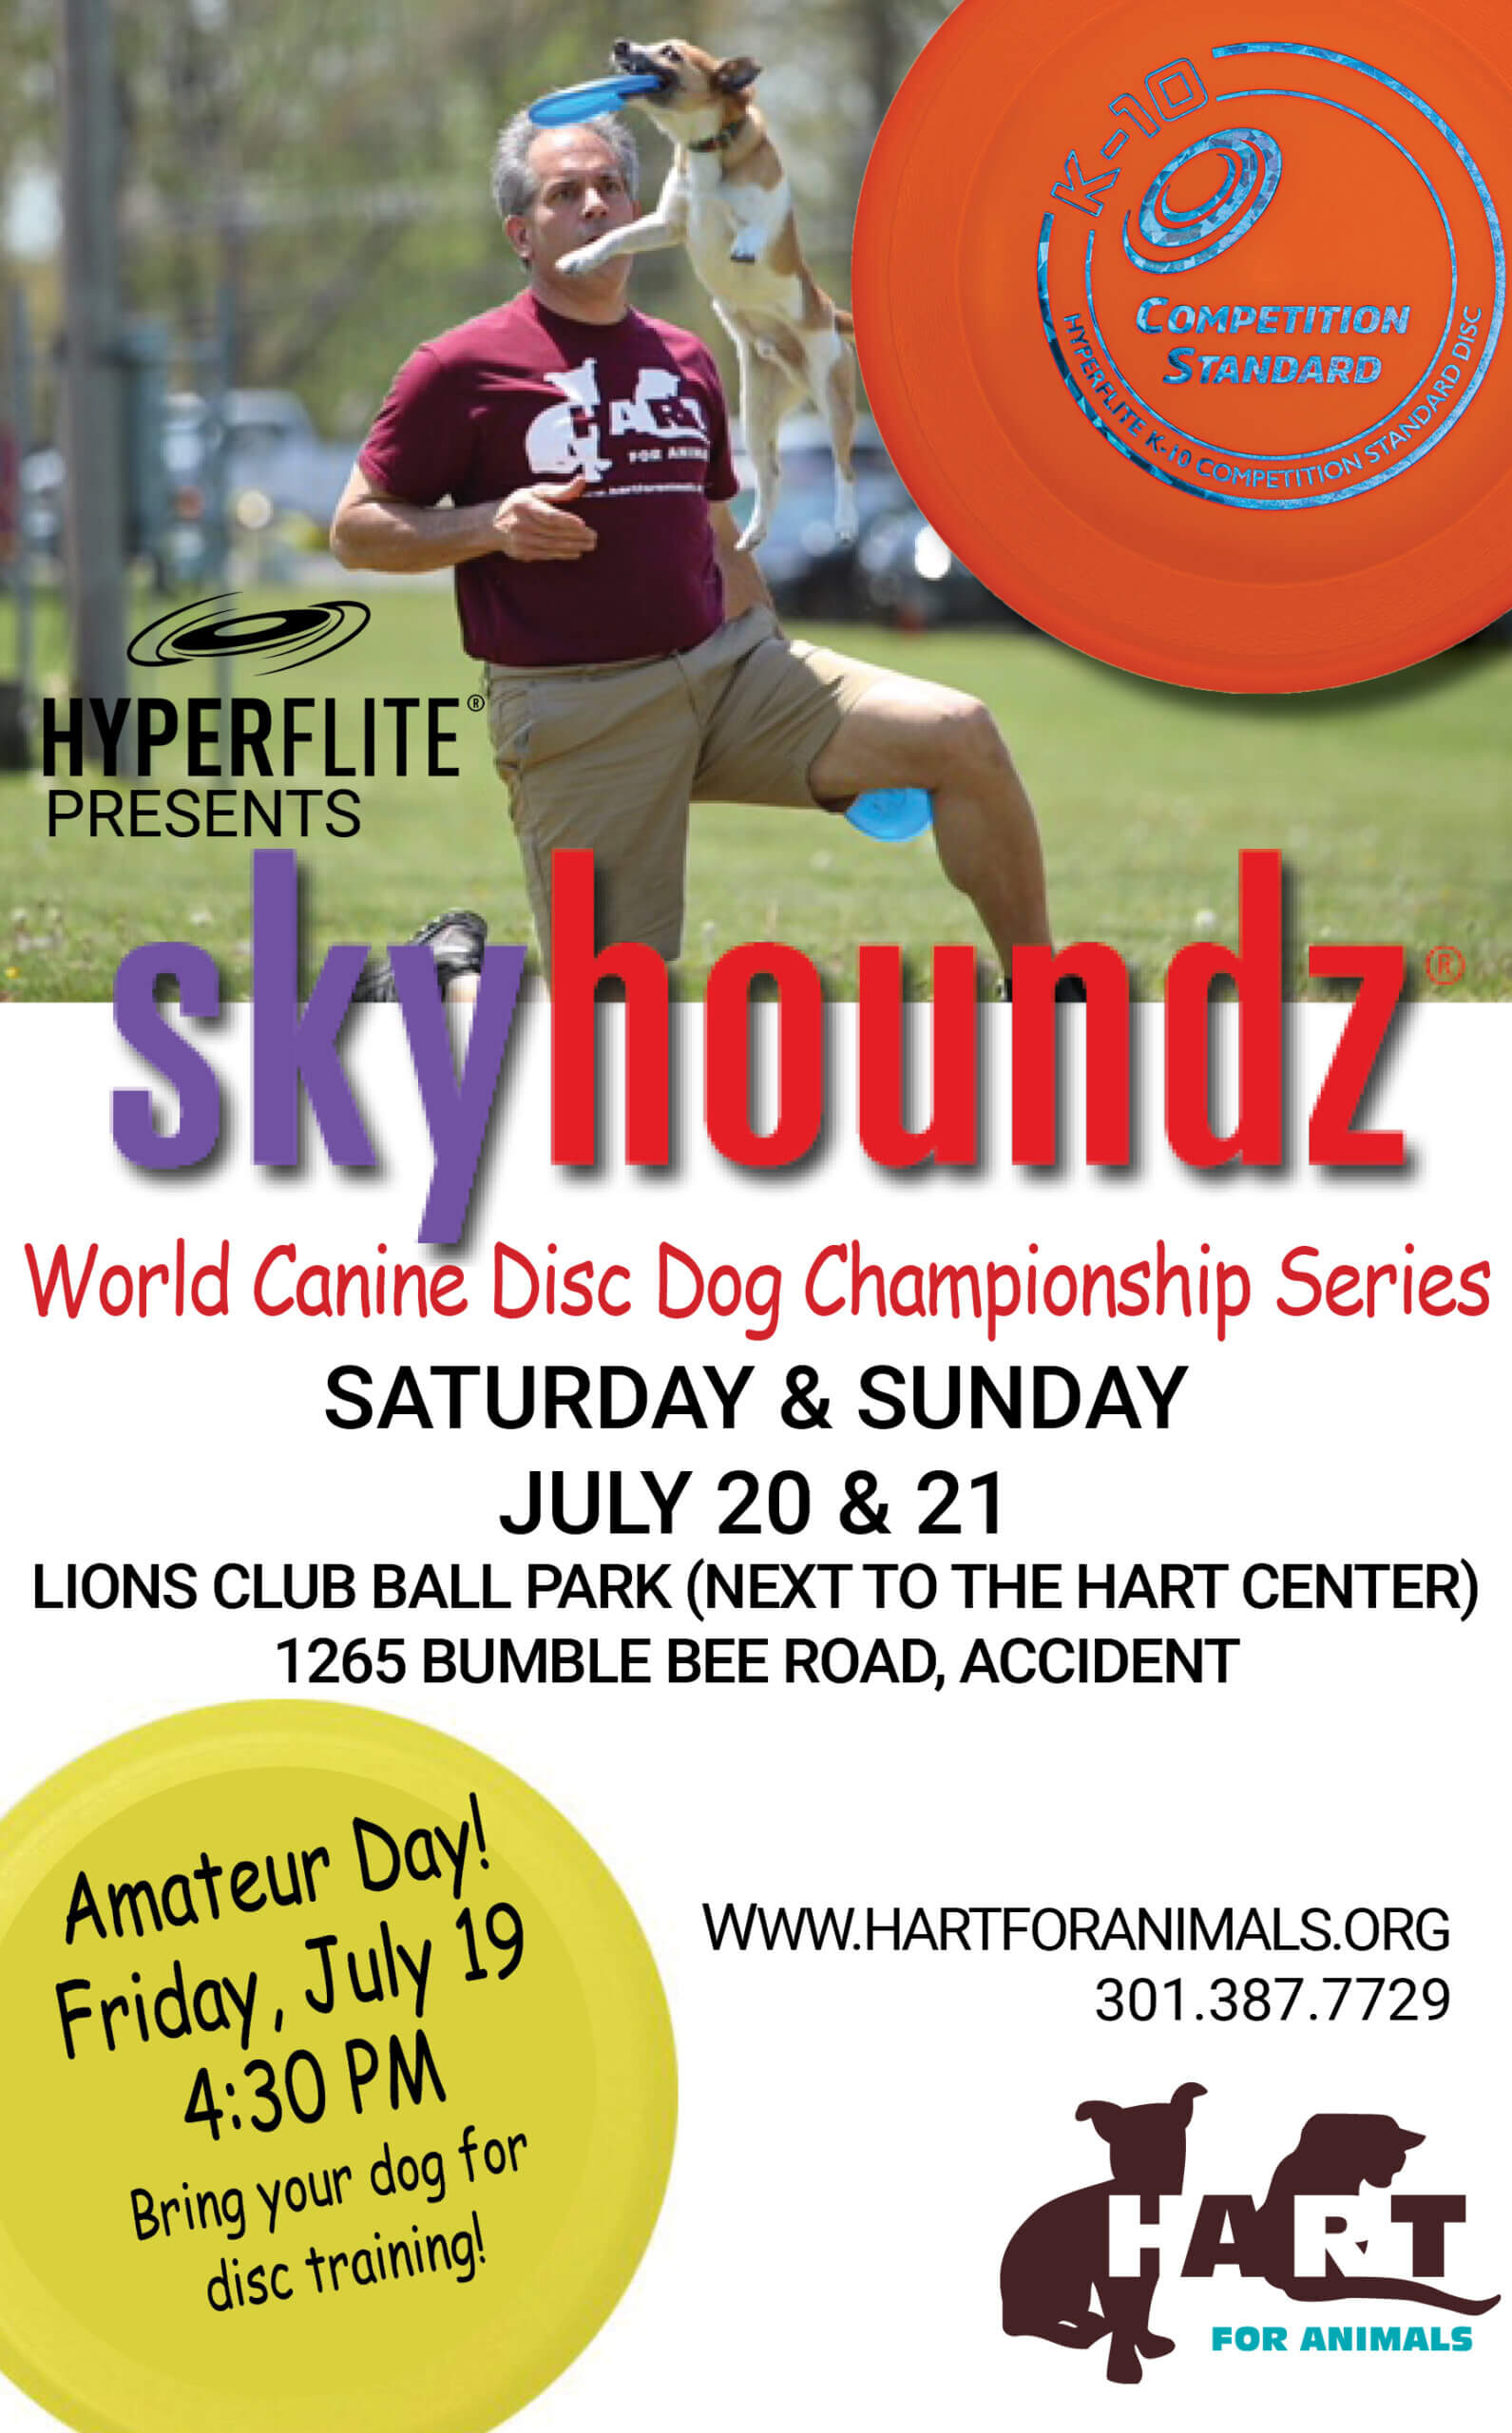 Skyhoundz at Deep Creek Lake, MD